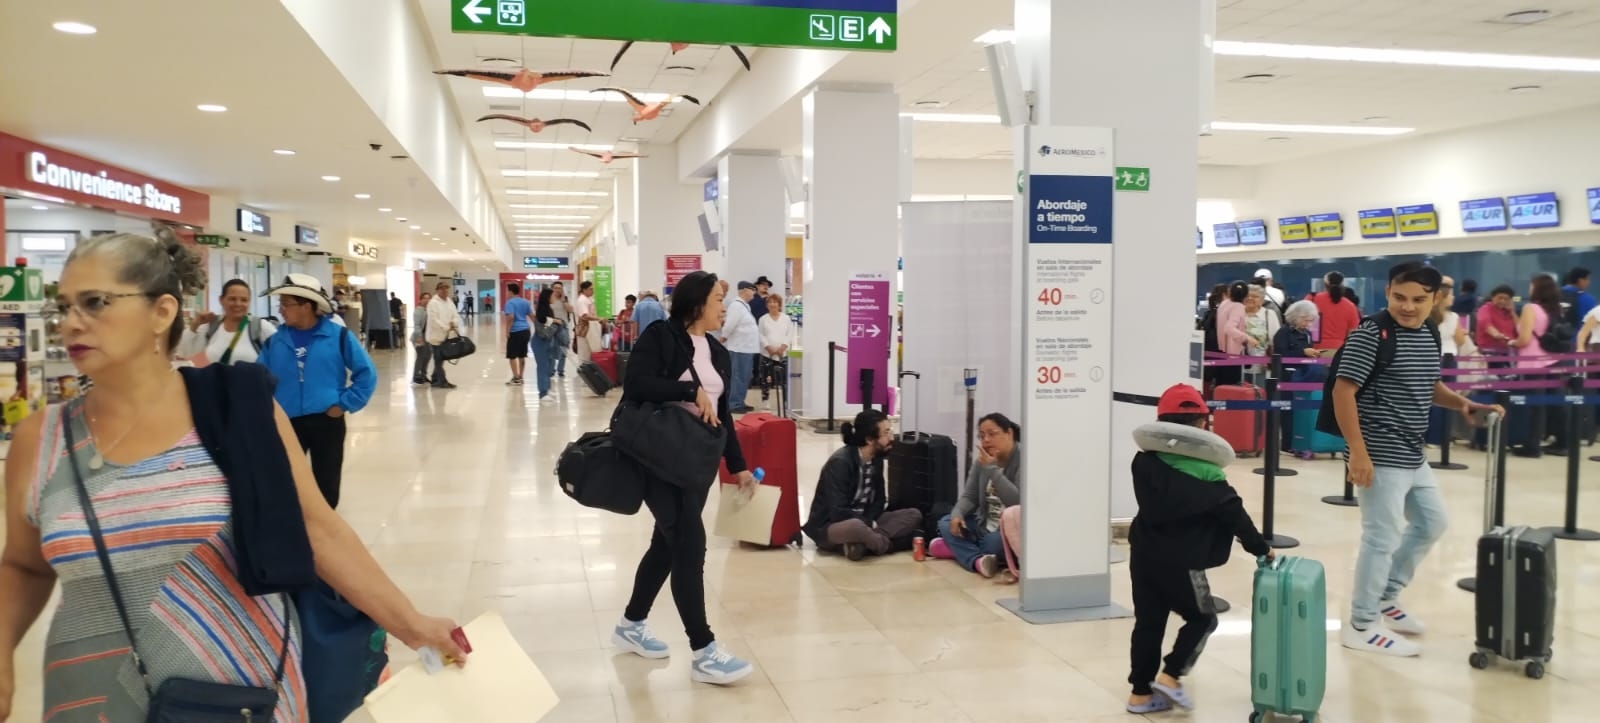 Aeropuerto de Mérida opera con vuelos atrasados de hasta por 15 minutos